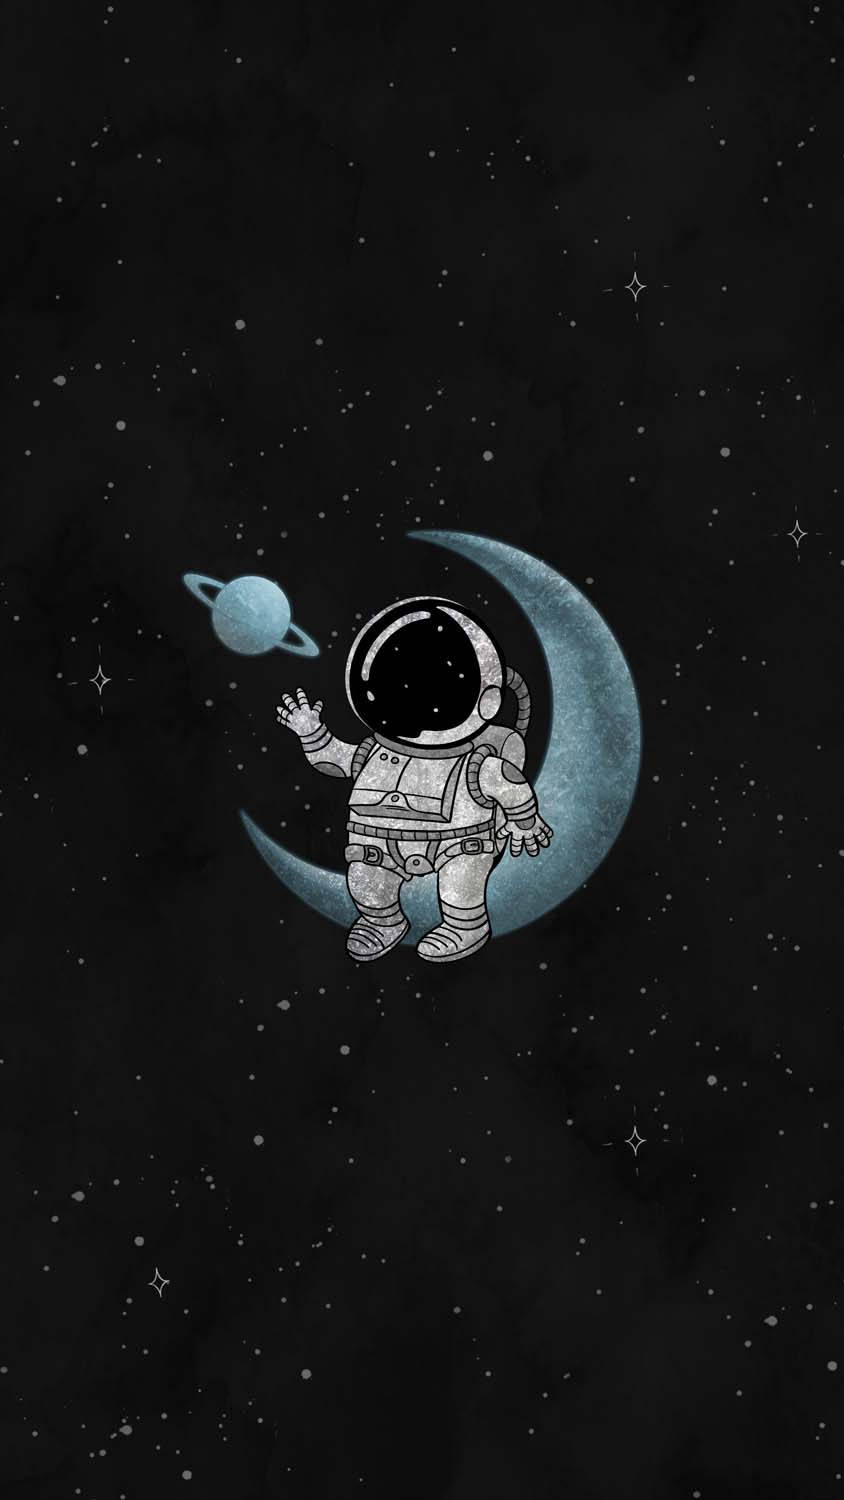 Cartoon Astronaut Sitting On The Moon Background